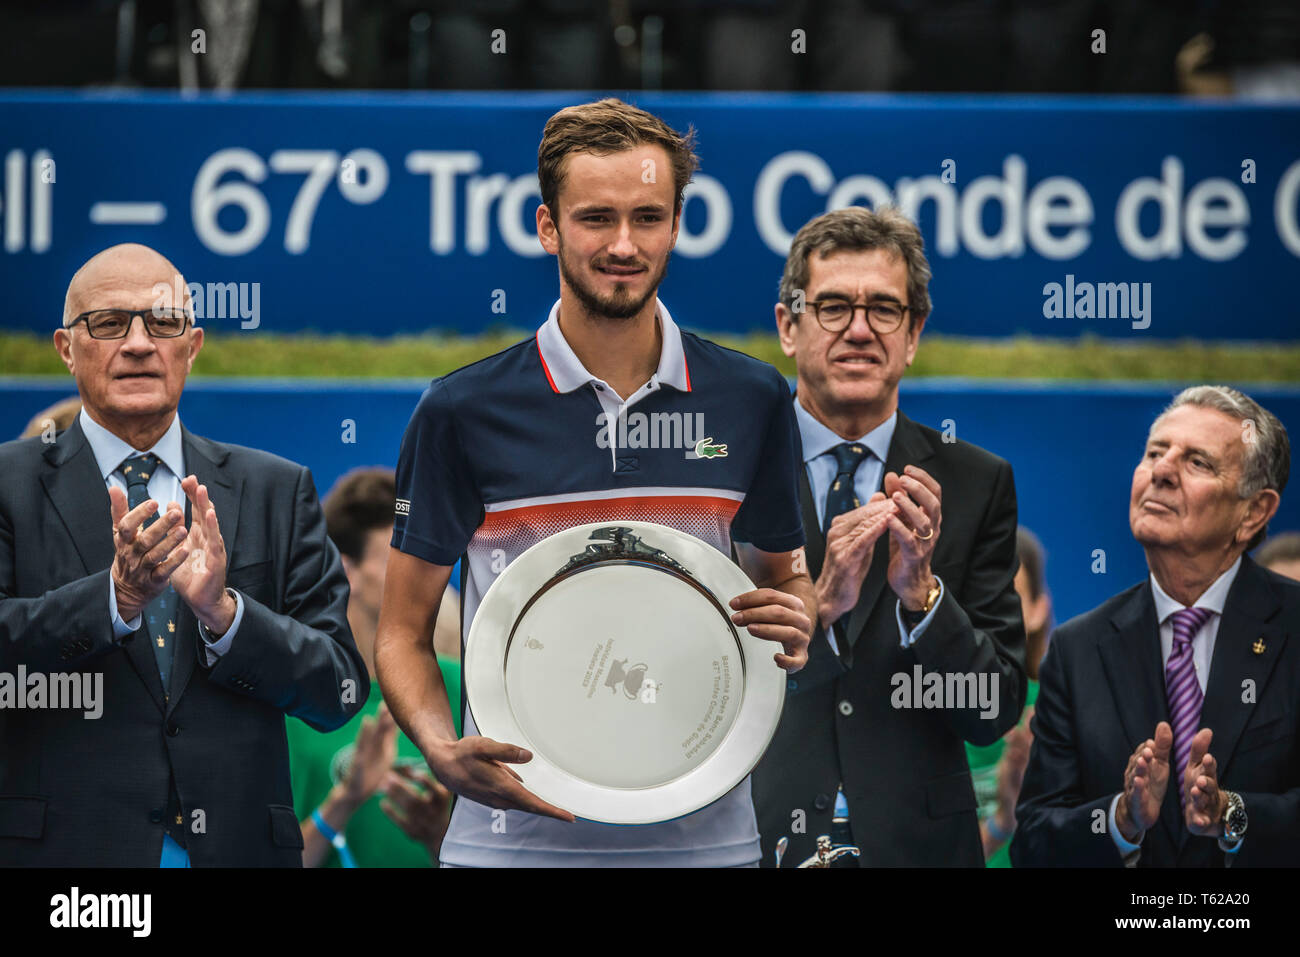 Barcelone, Espagne. 28 avril, 2019 : DANIIL MEDVEDEV (RUS) est défait par Dominic Thiem (AUT) dans la finale de l'Open de Barcelone Banc Sabadell' 2019. Thiem gagne 6:4 , 6:0 Banque D'Images